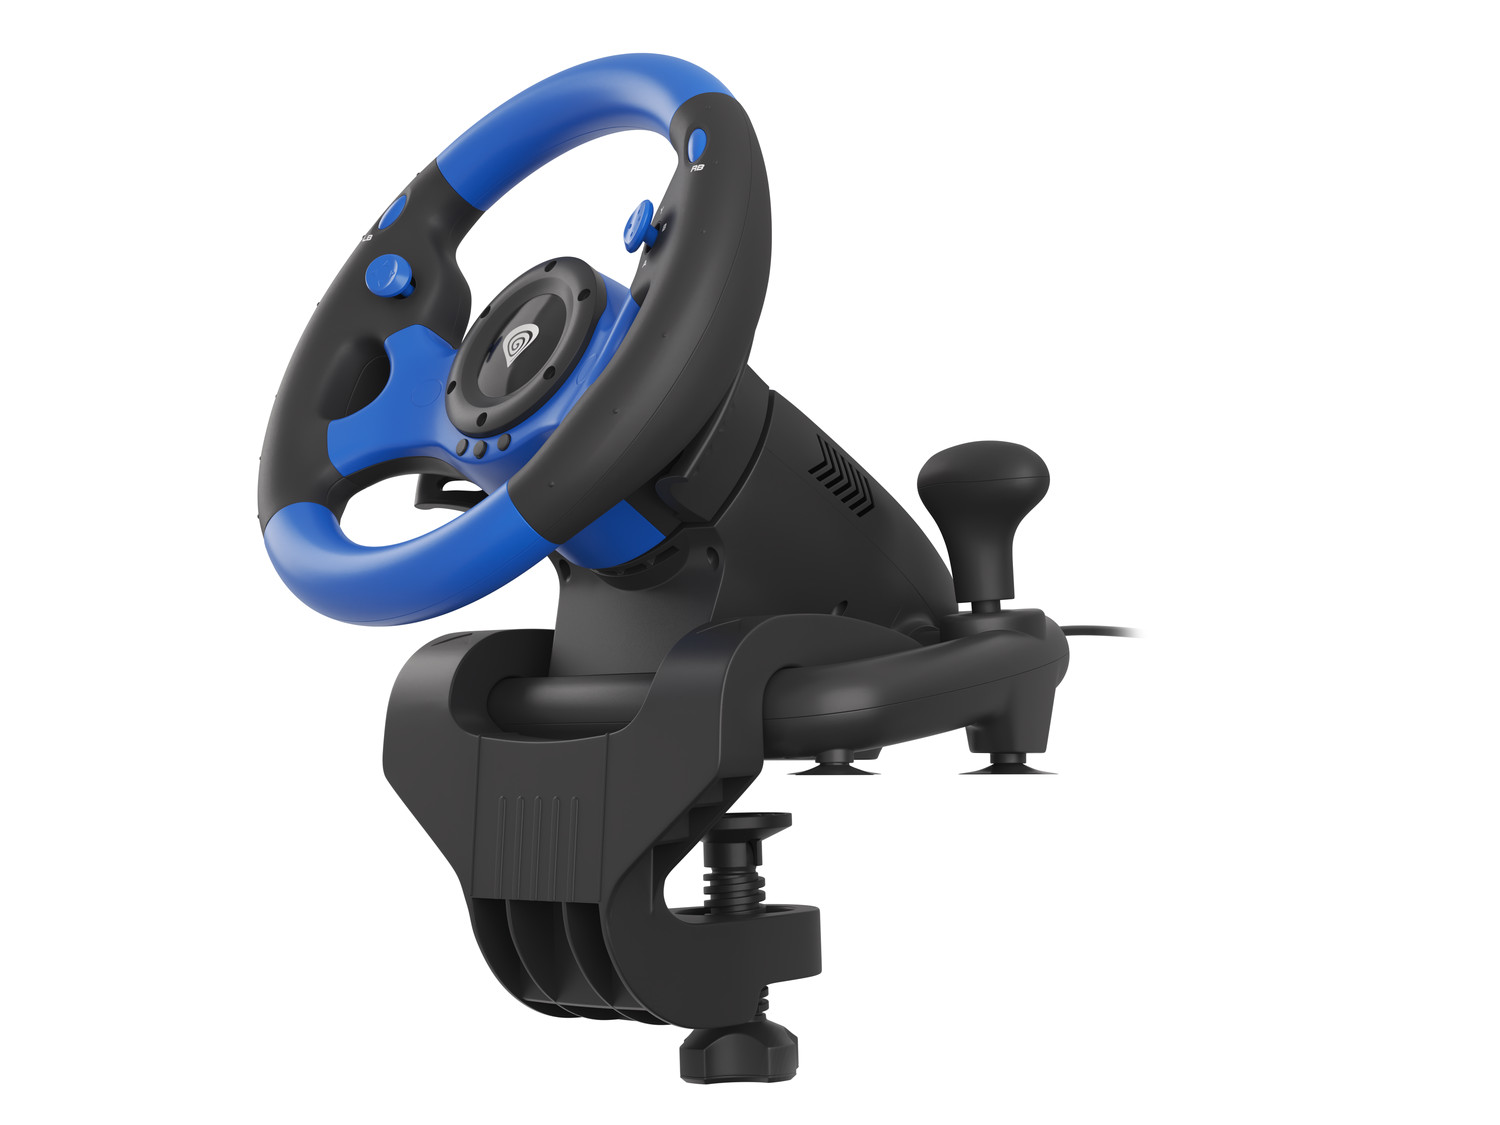 Obrázek Herní volant Genesis Seaborg 350, multiplatformní pro PC, PS4, PS3,  Xbox One, Xbox 360, Nintendo Switch